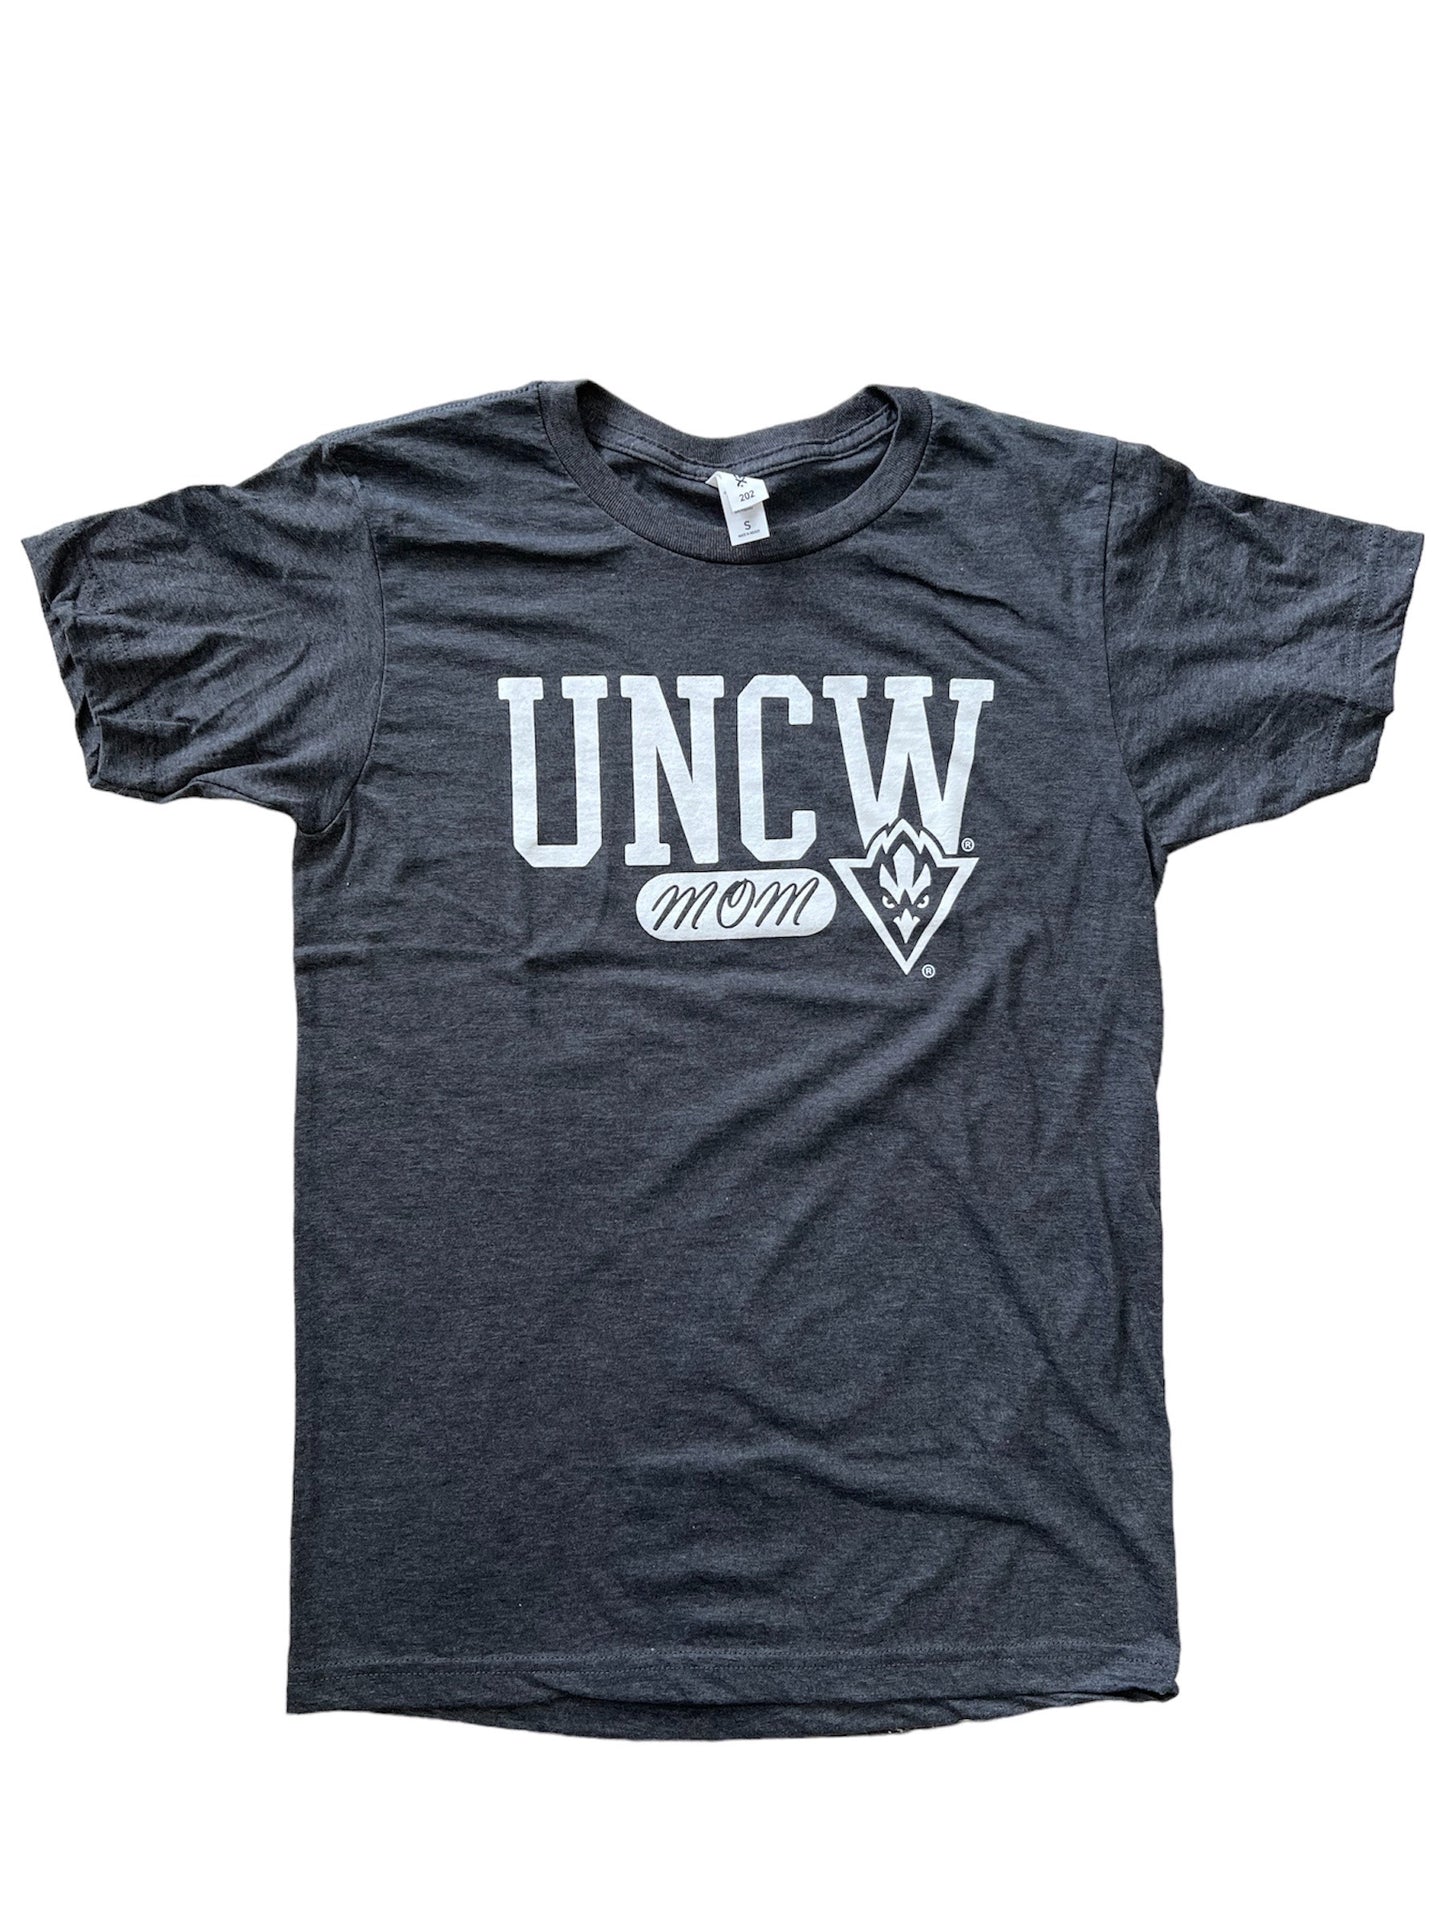 UNCW Seahawks Mom - T Shirt - Charcaol